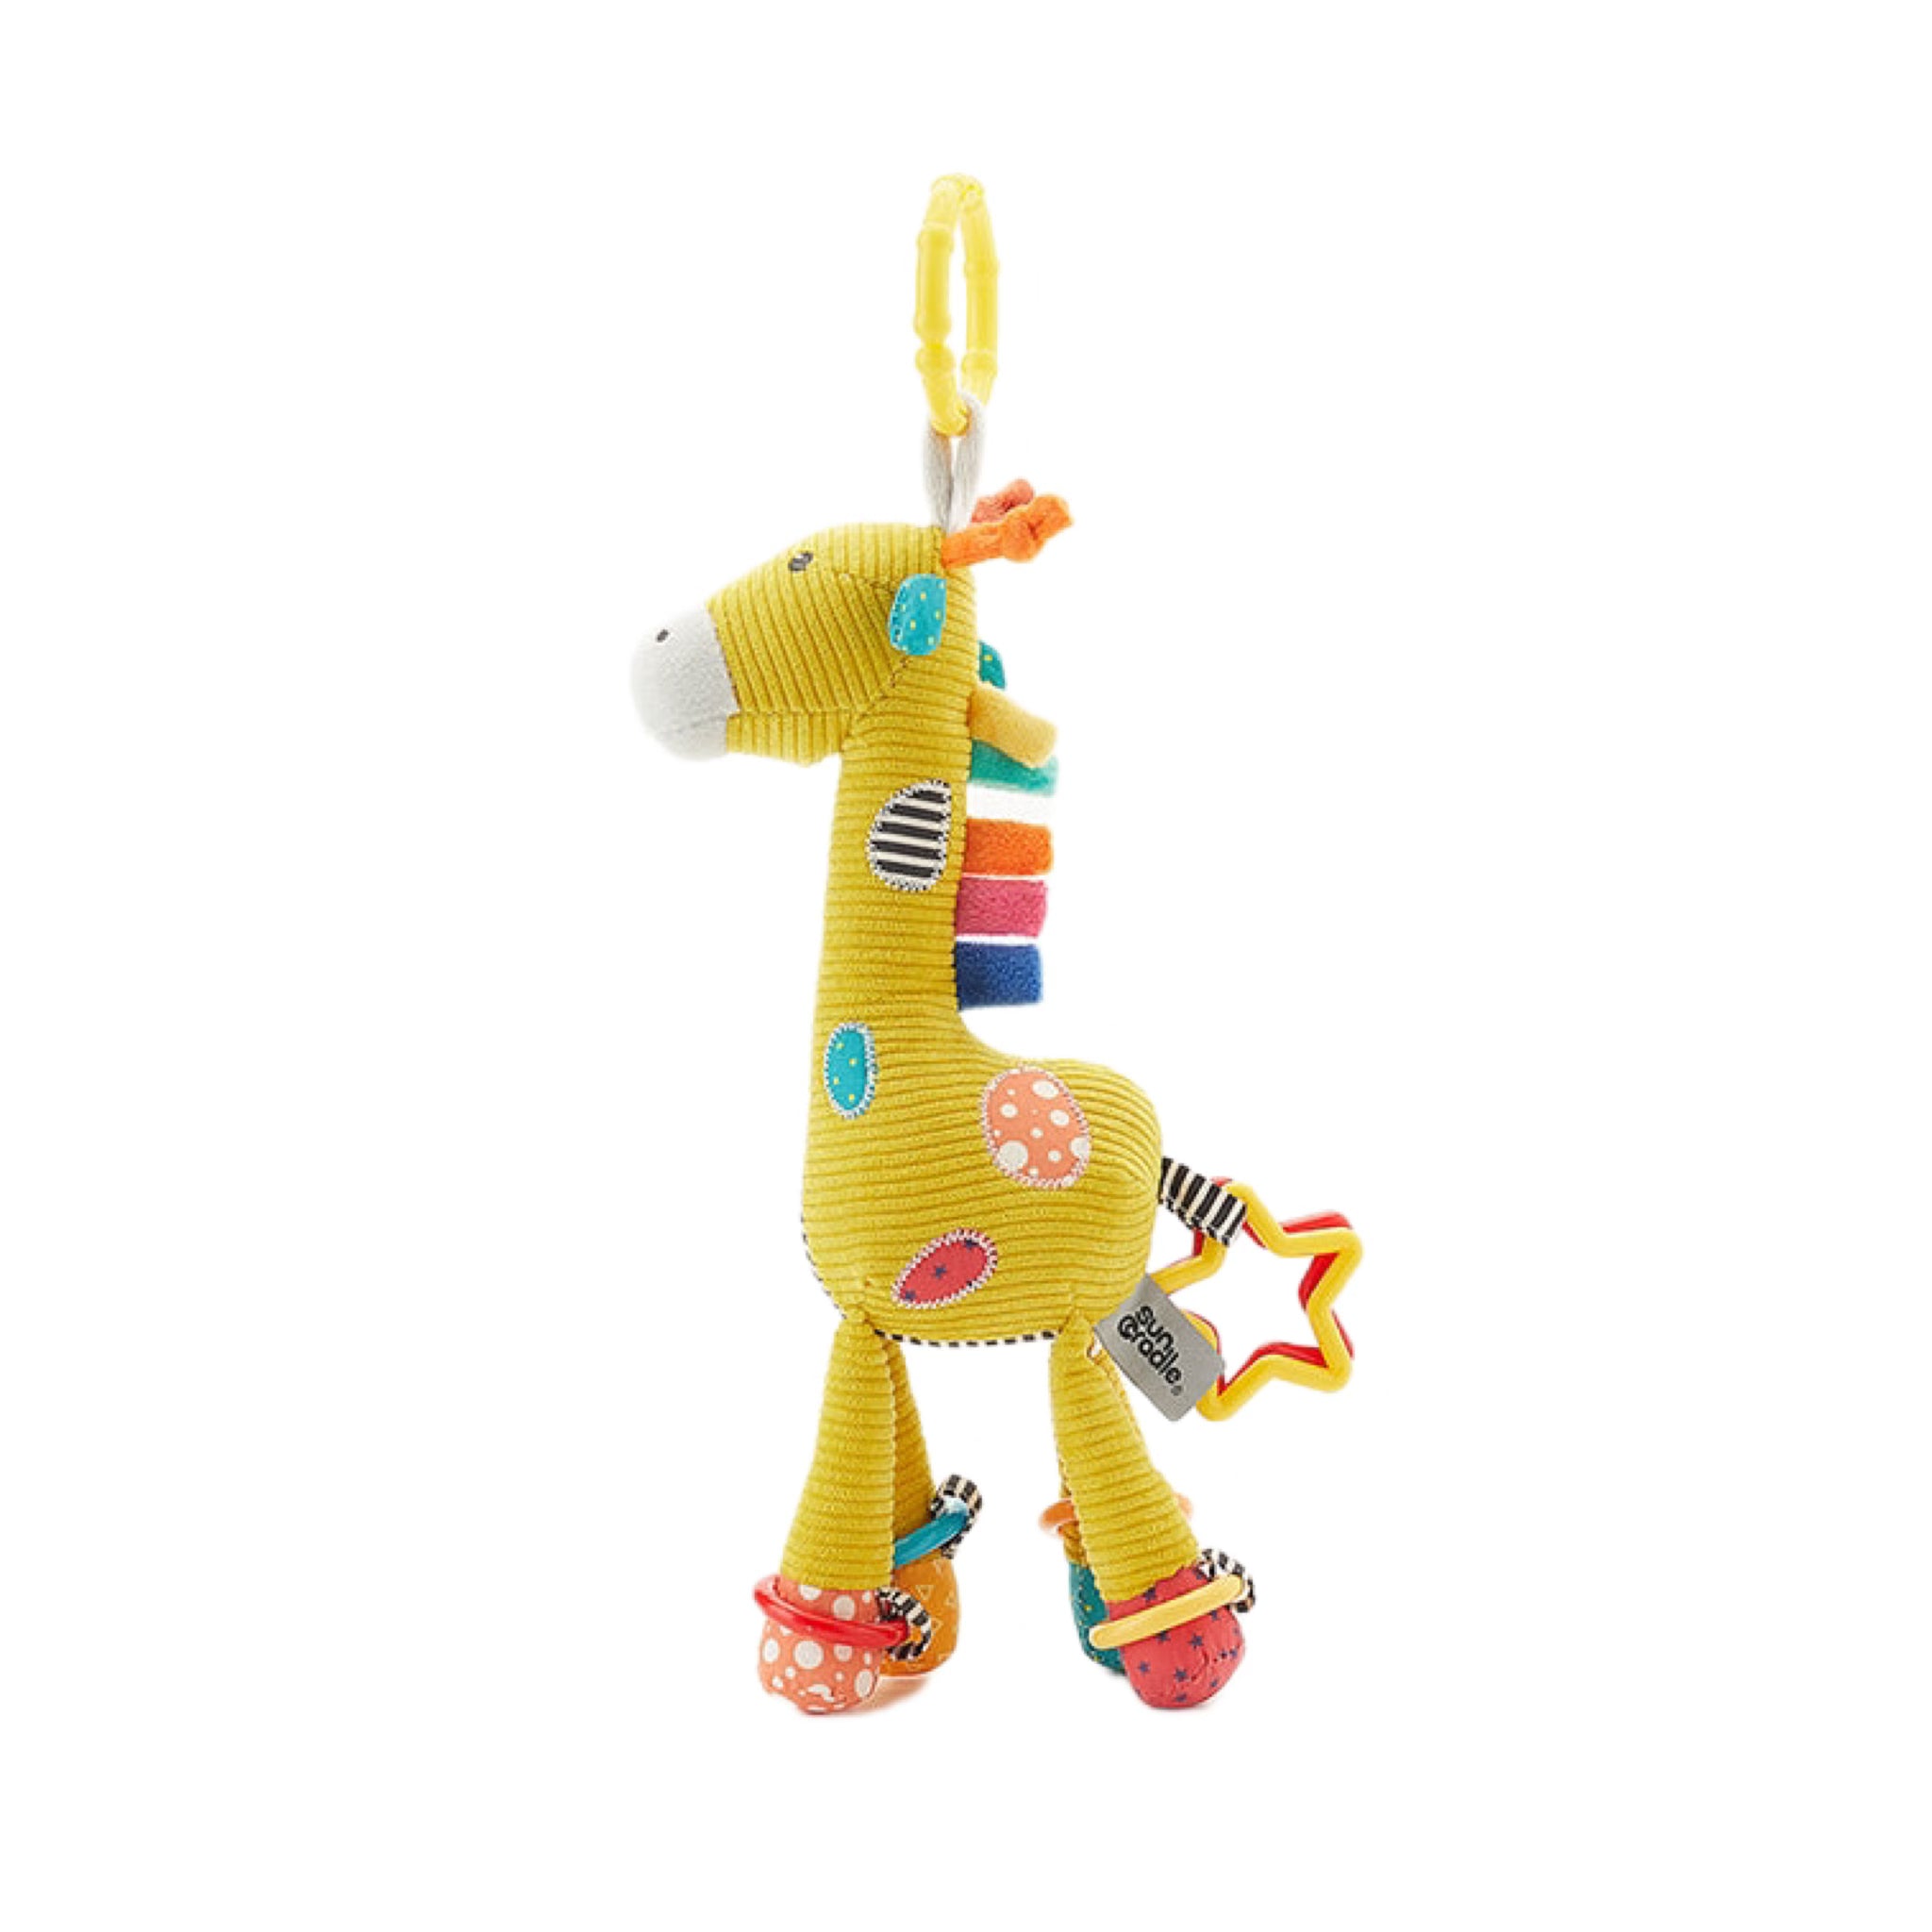 Giraffe Suncradle